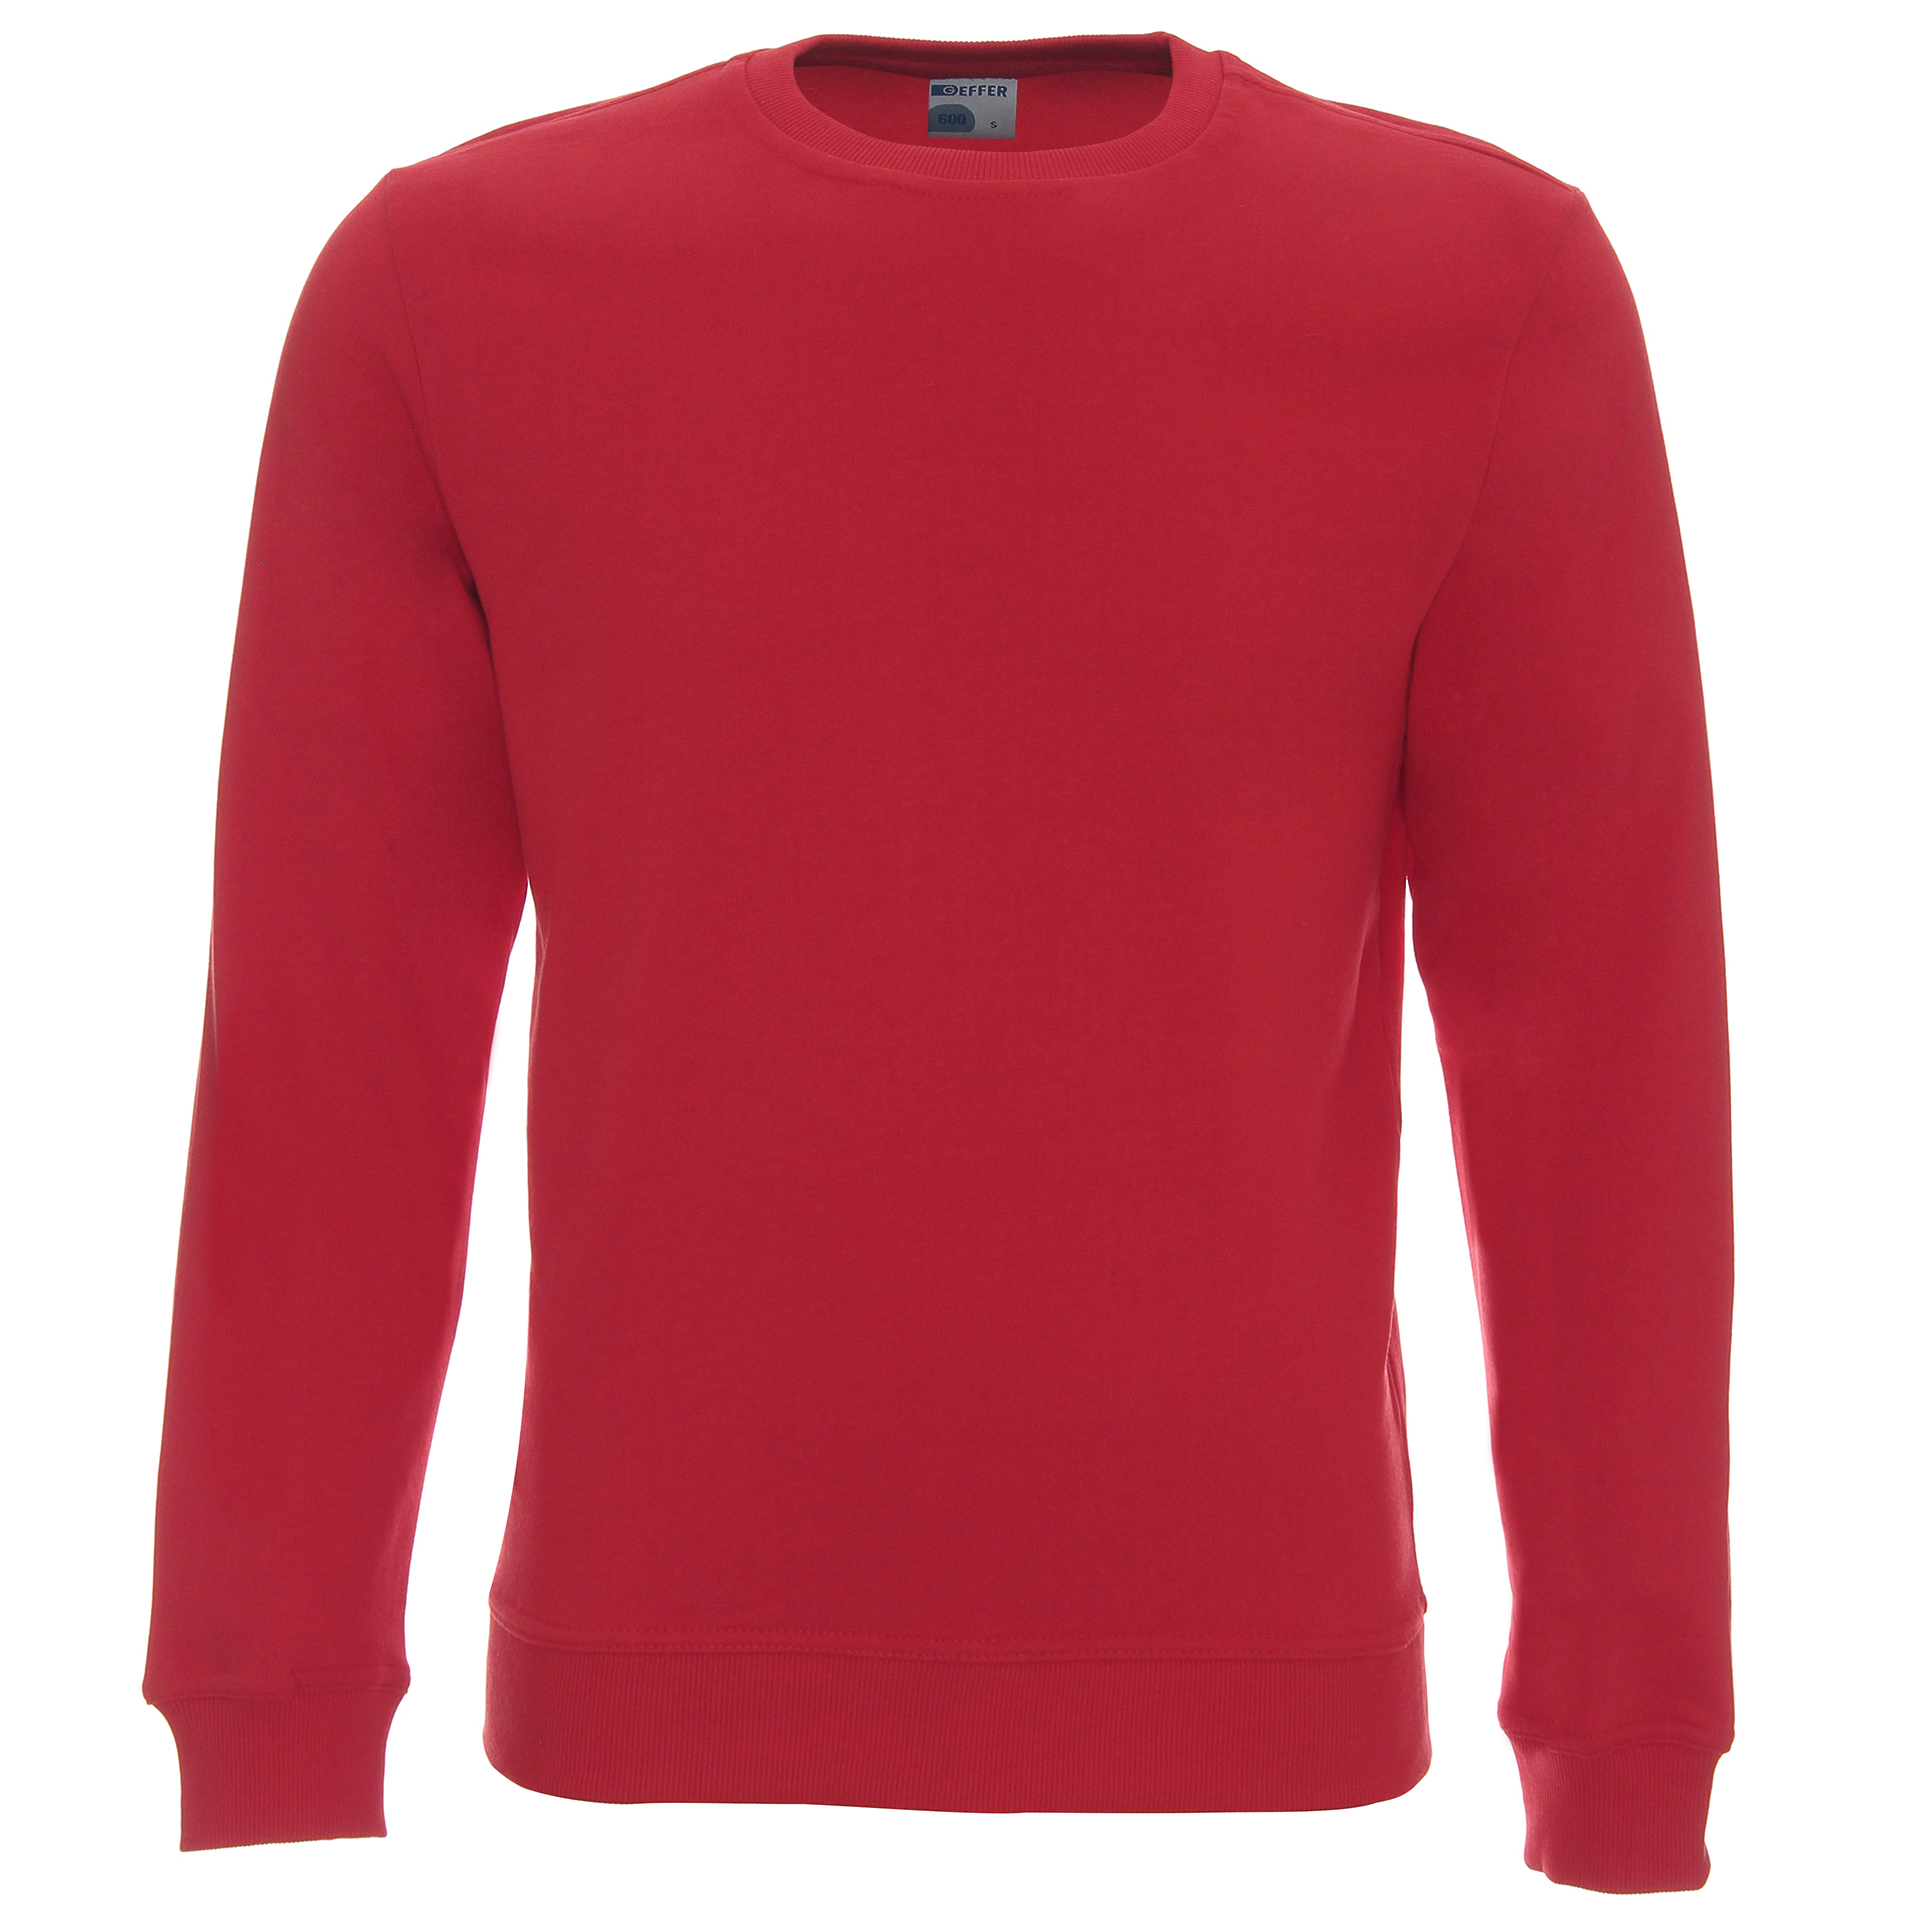 Bluza męska Geffer 600 - czerwona